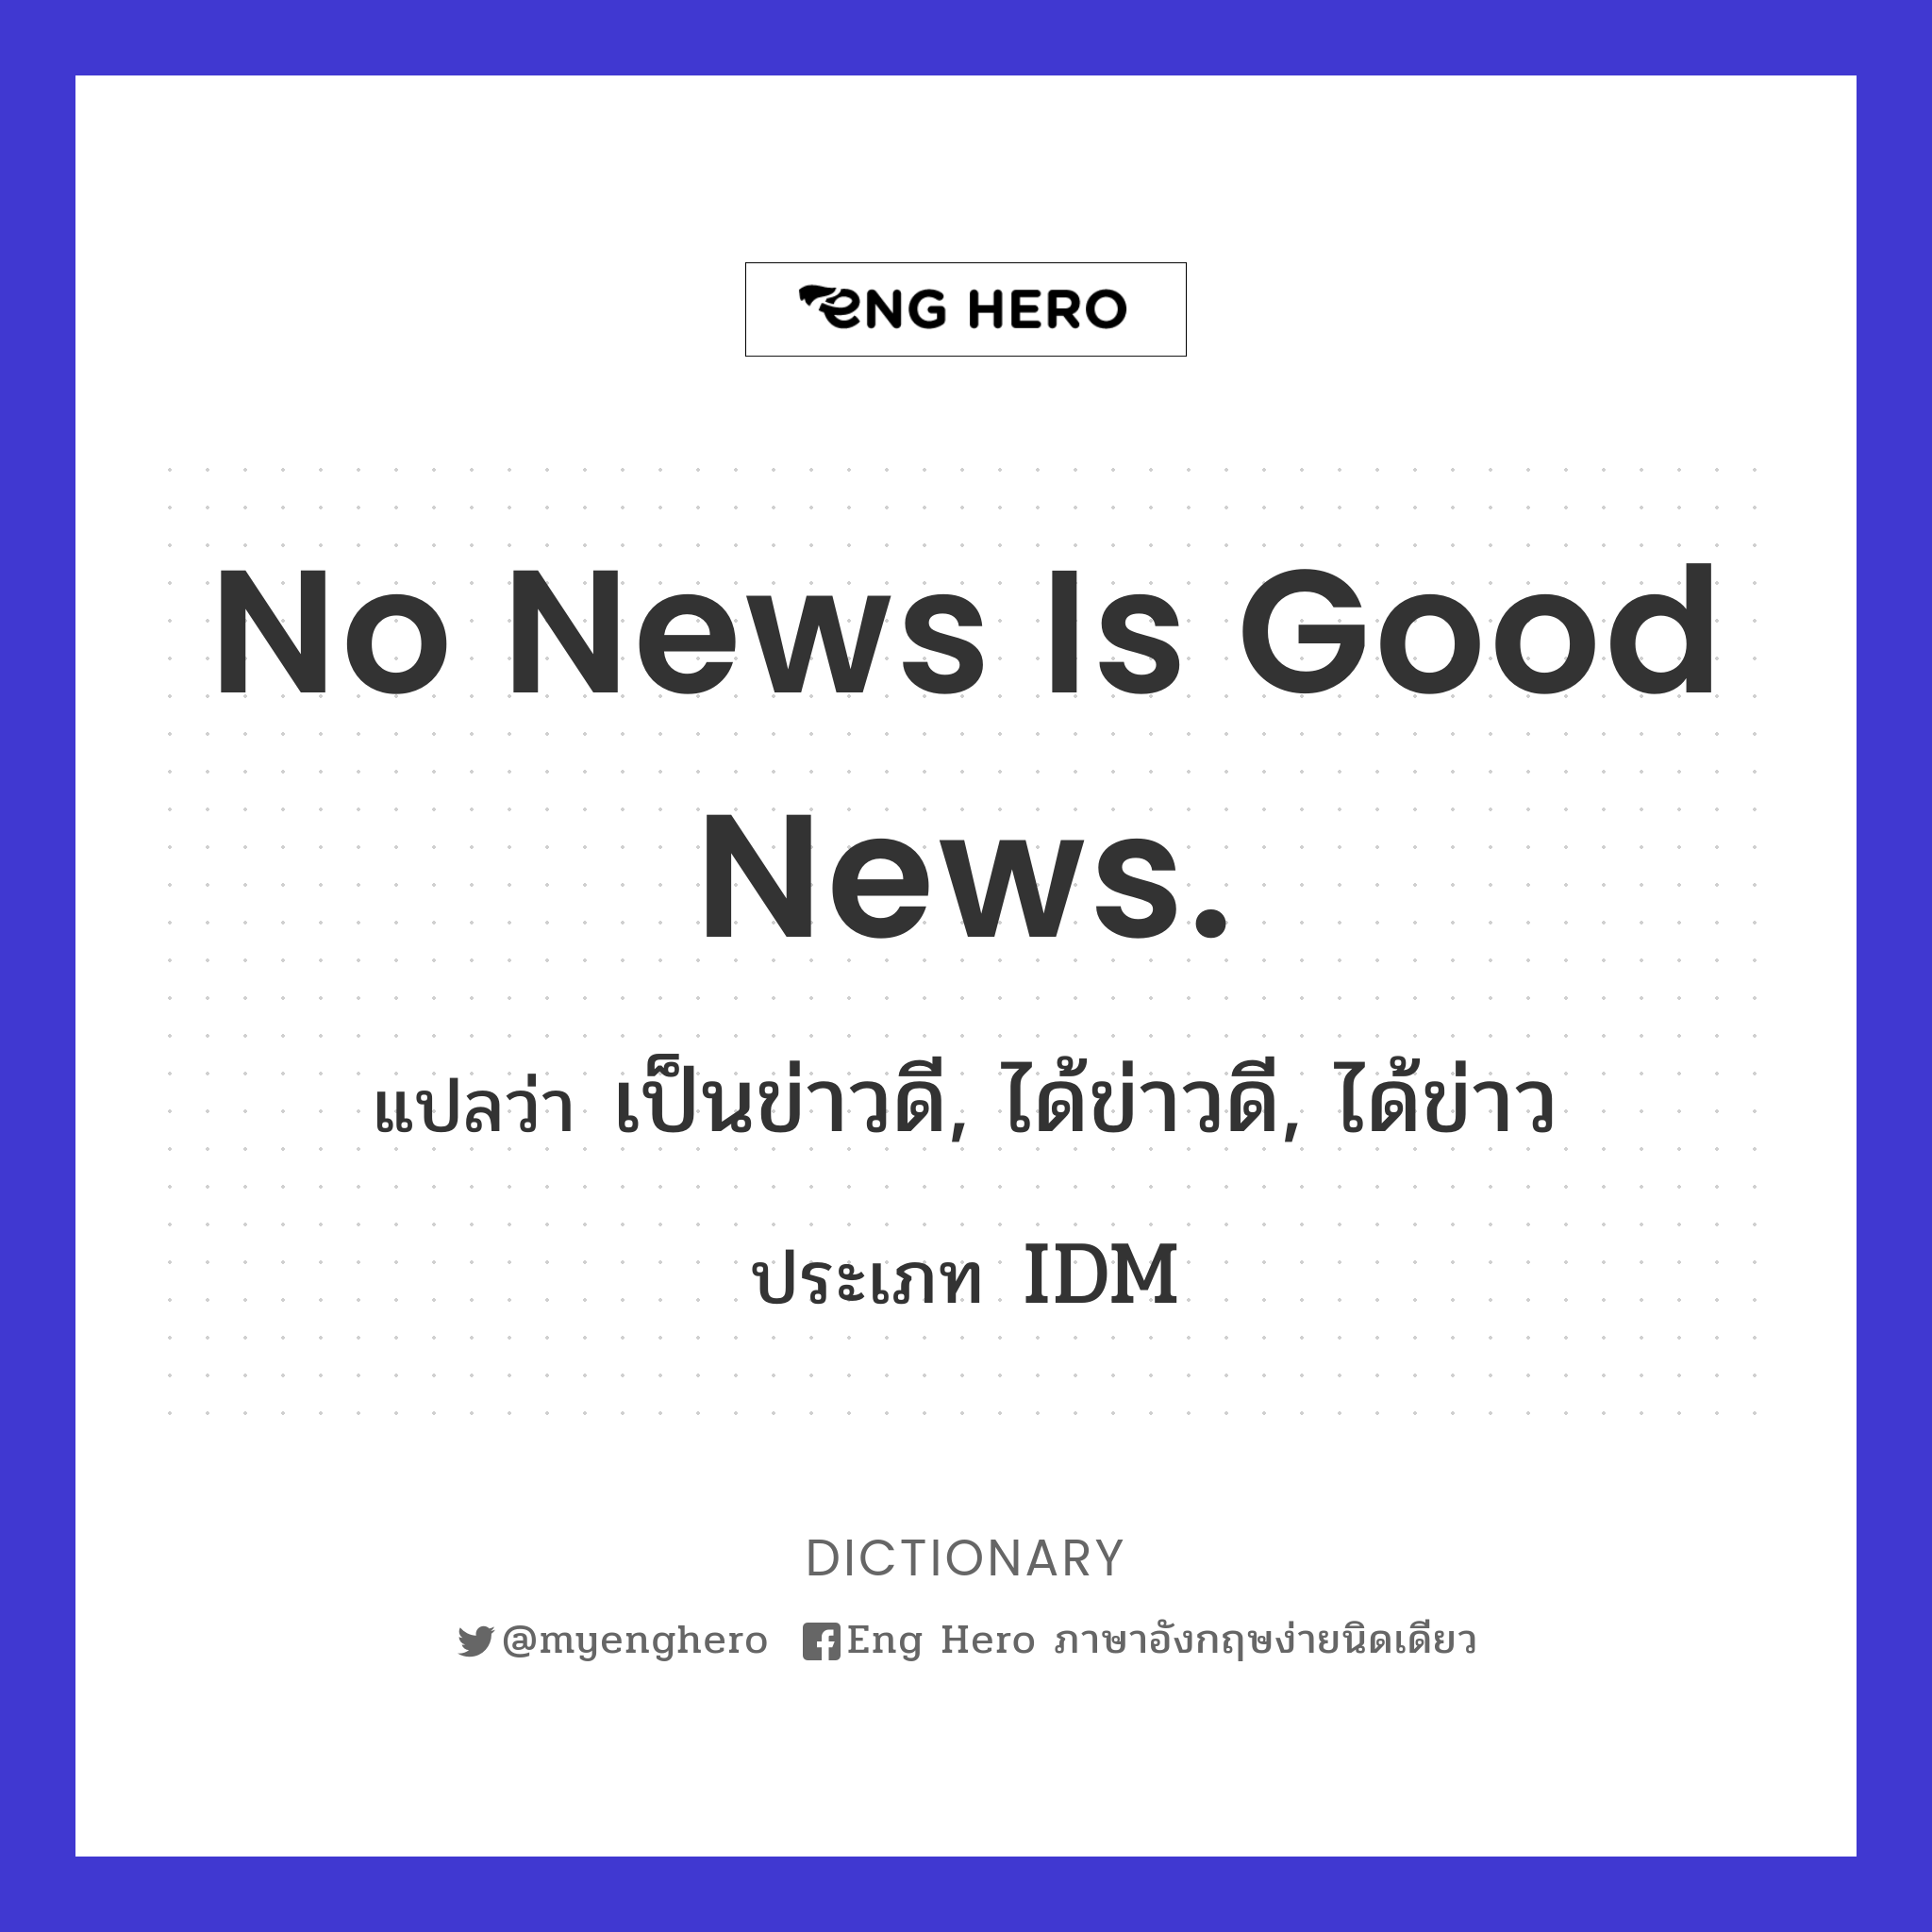 No news is good news.